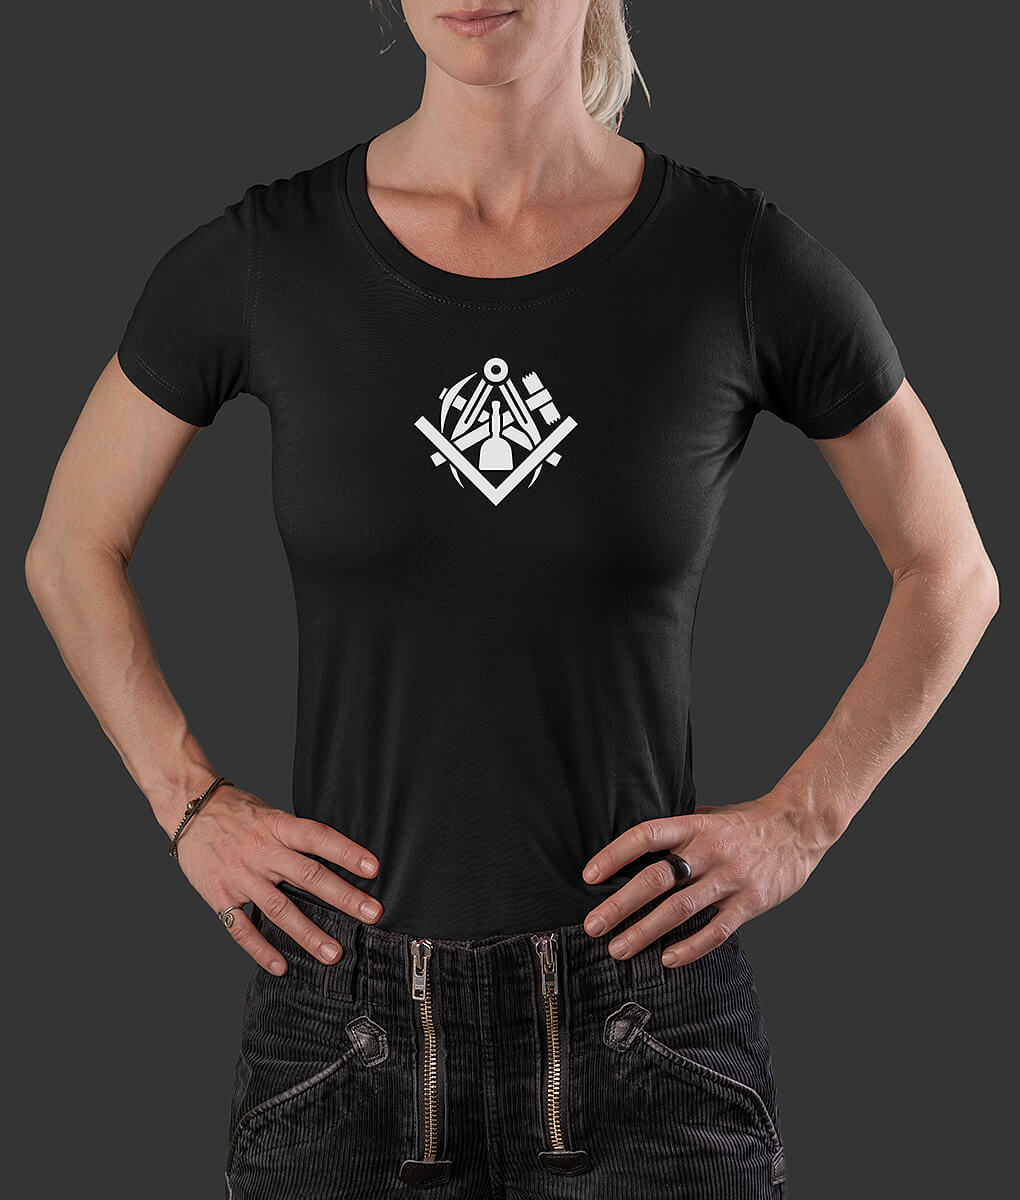 T-Shirt Louisa Klassik Steinmetz Klassik Brust